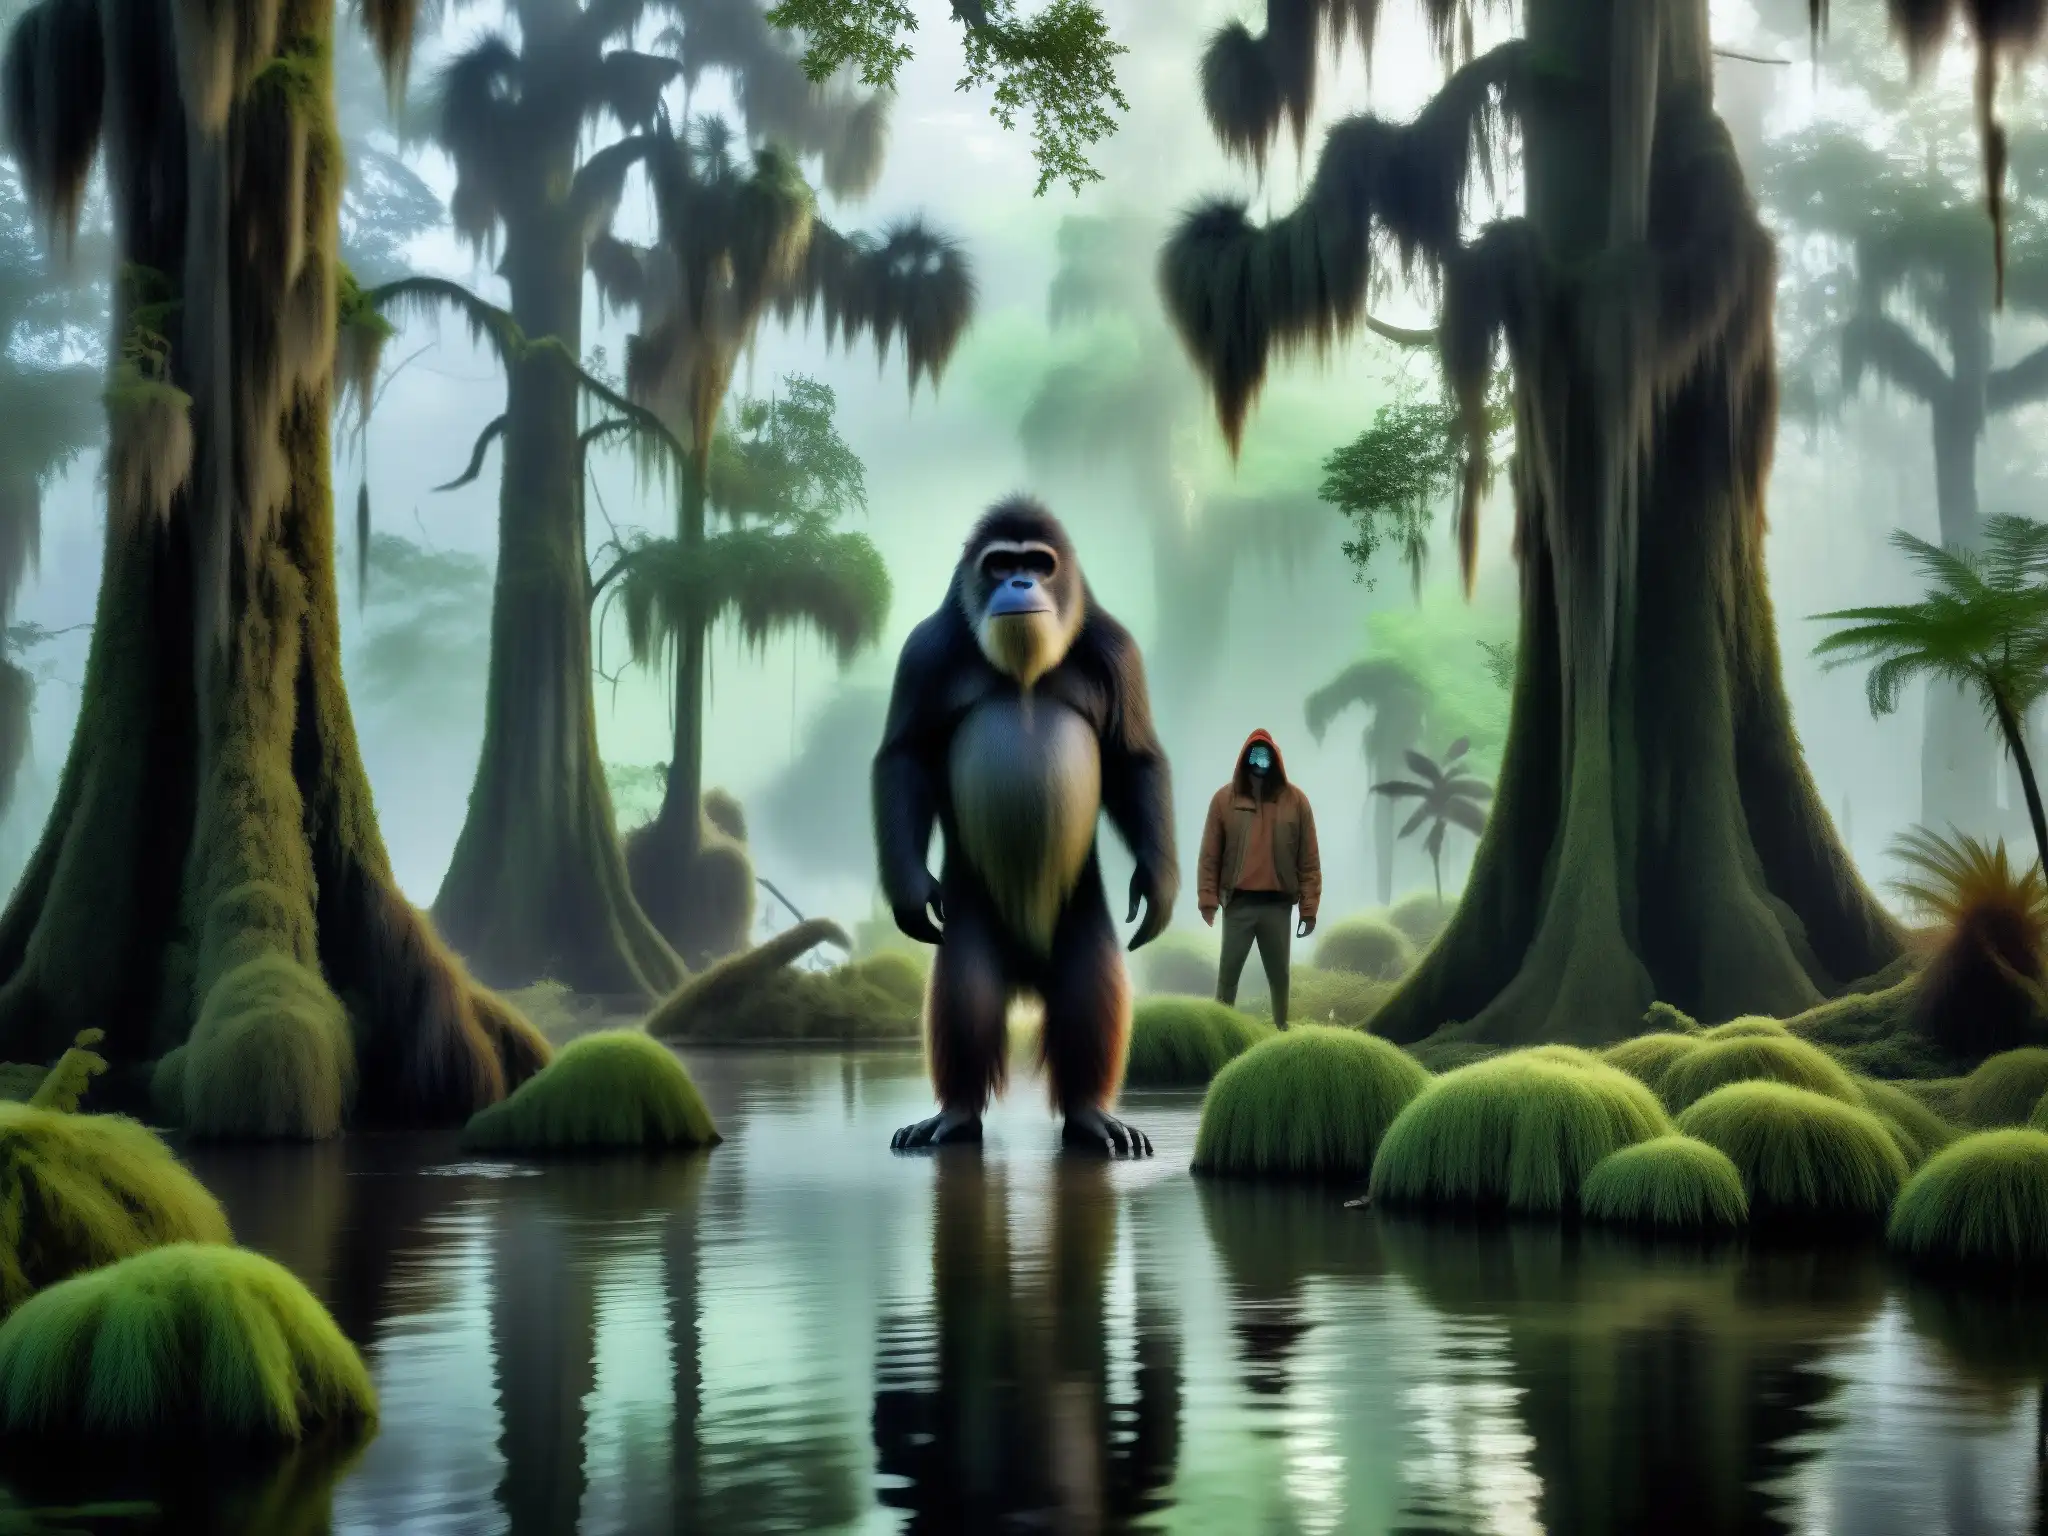 Encuentro con el Skunk Ape en un pantano neblinoso y misterioso con cipreses y musgo español colgando de sus ramas, creando una atmósfera inquietante